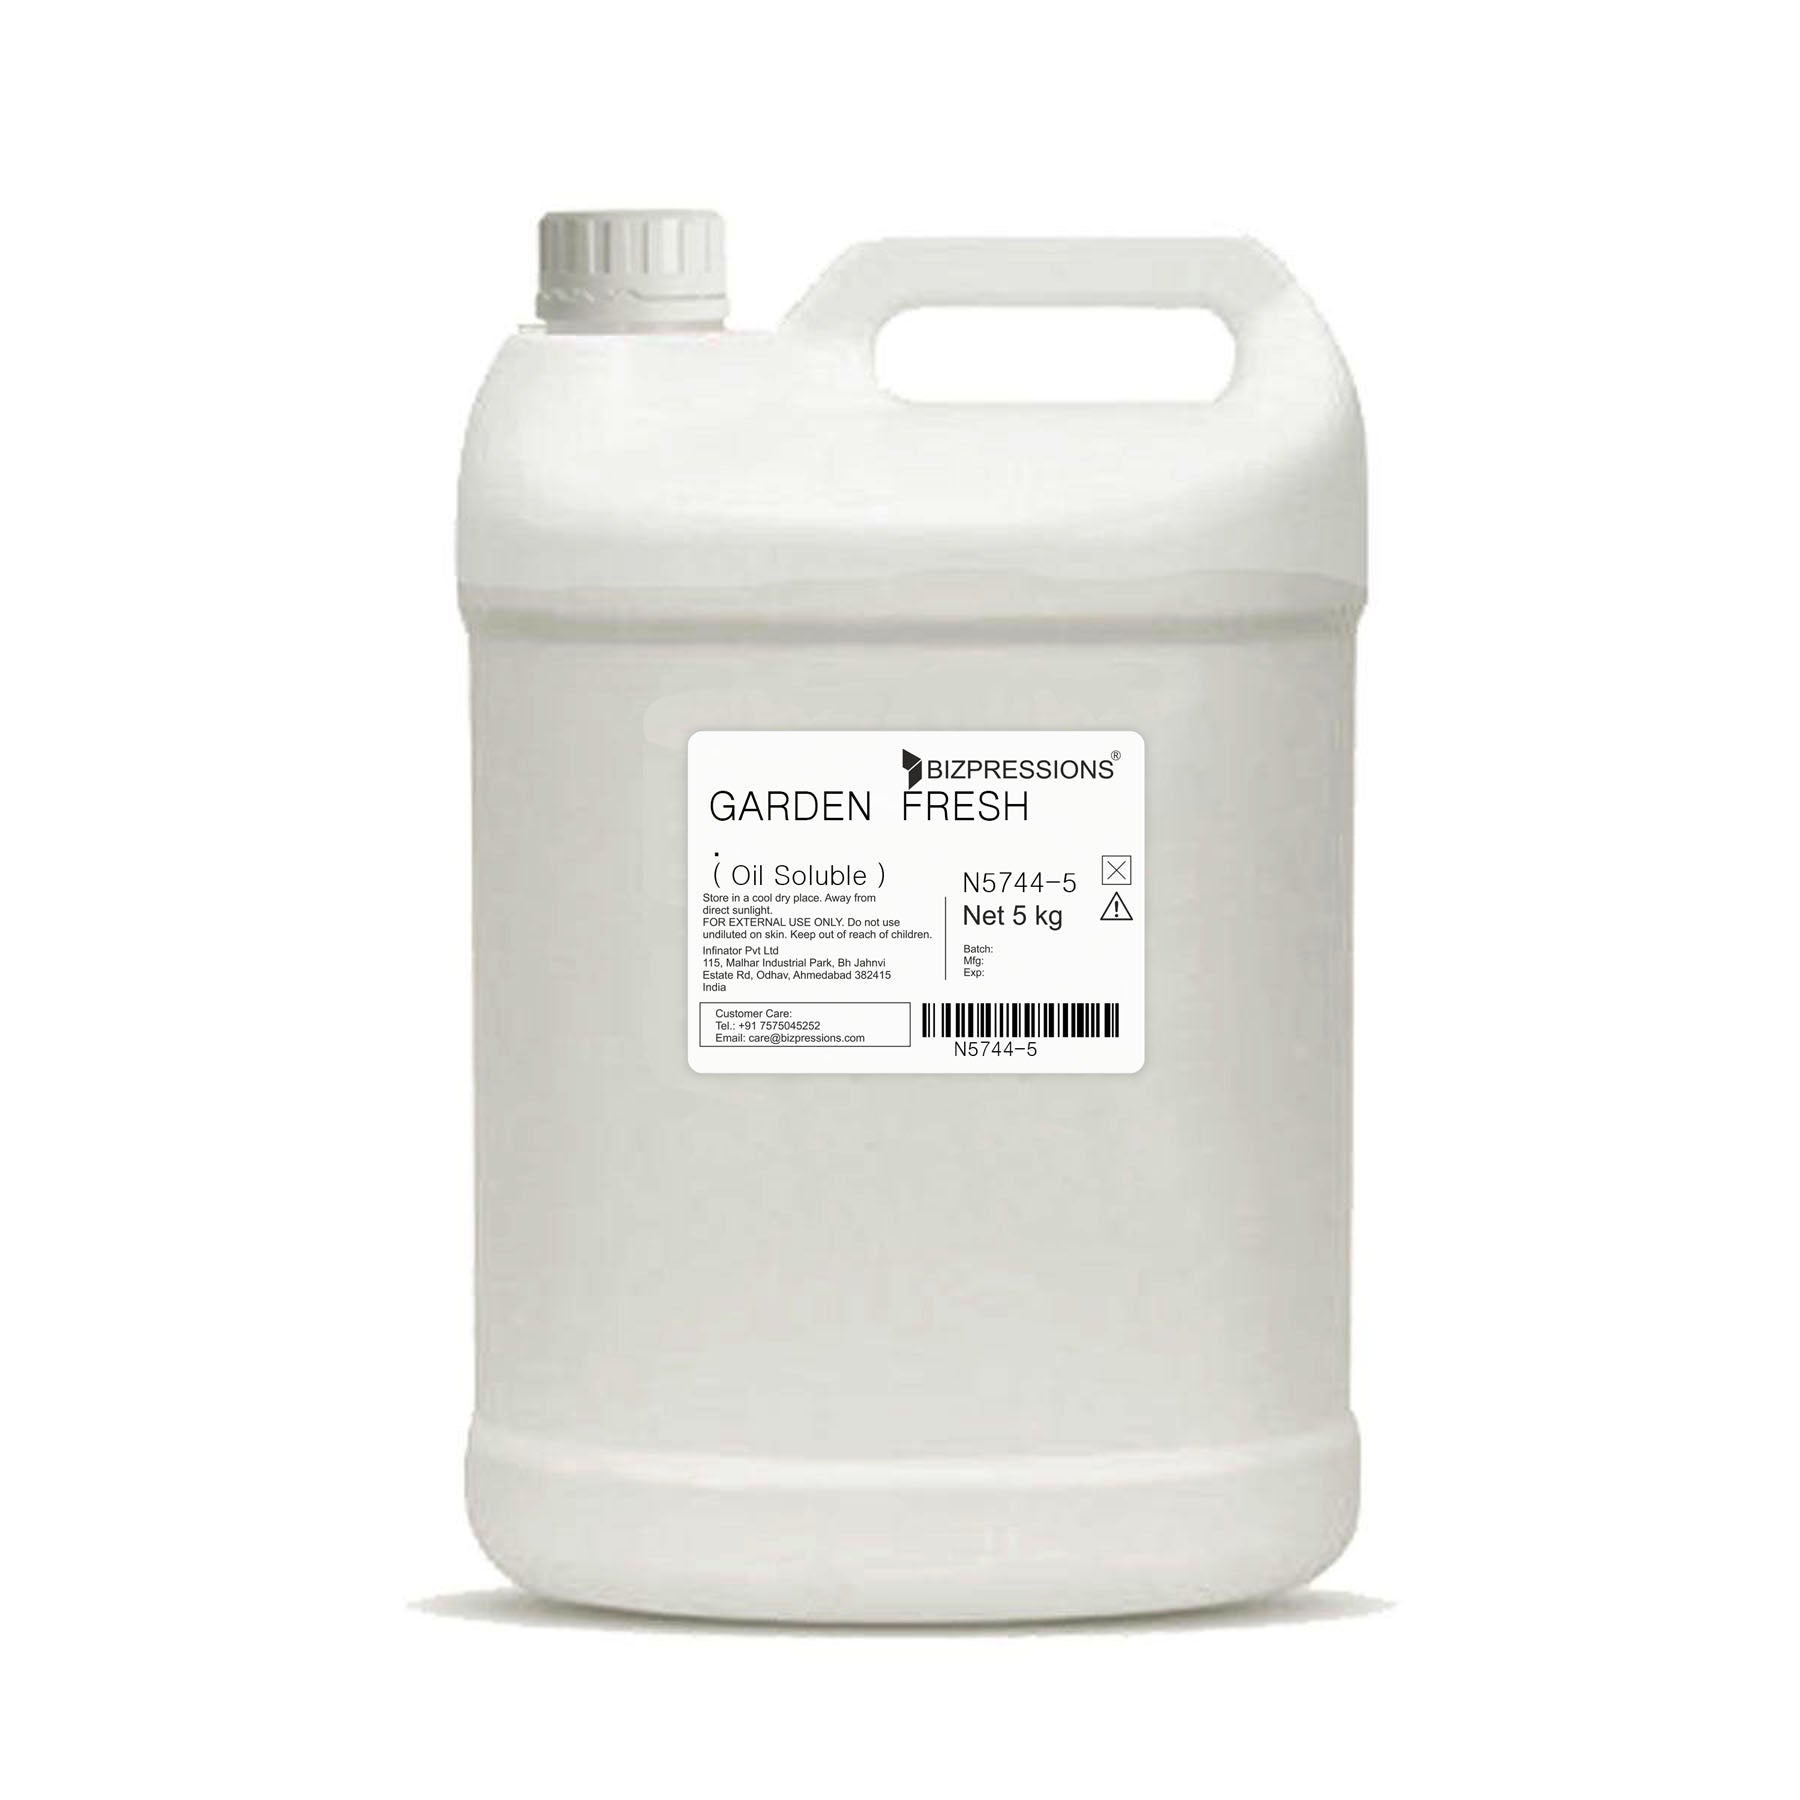 GARDEN FRESH - Fragrance ( Oil Soluble ) - 5 kg